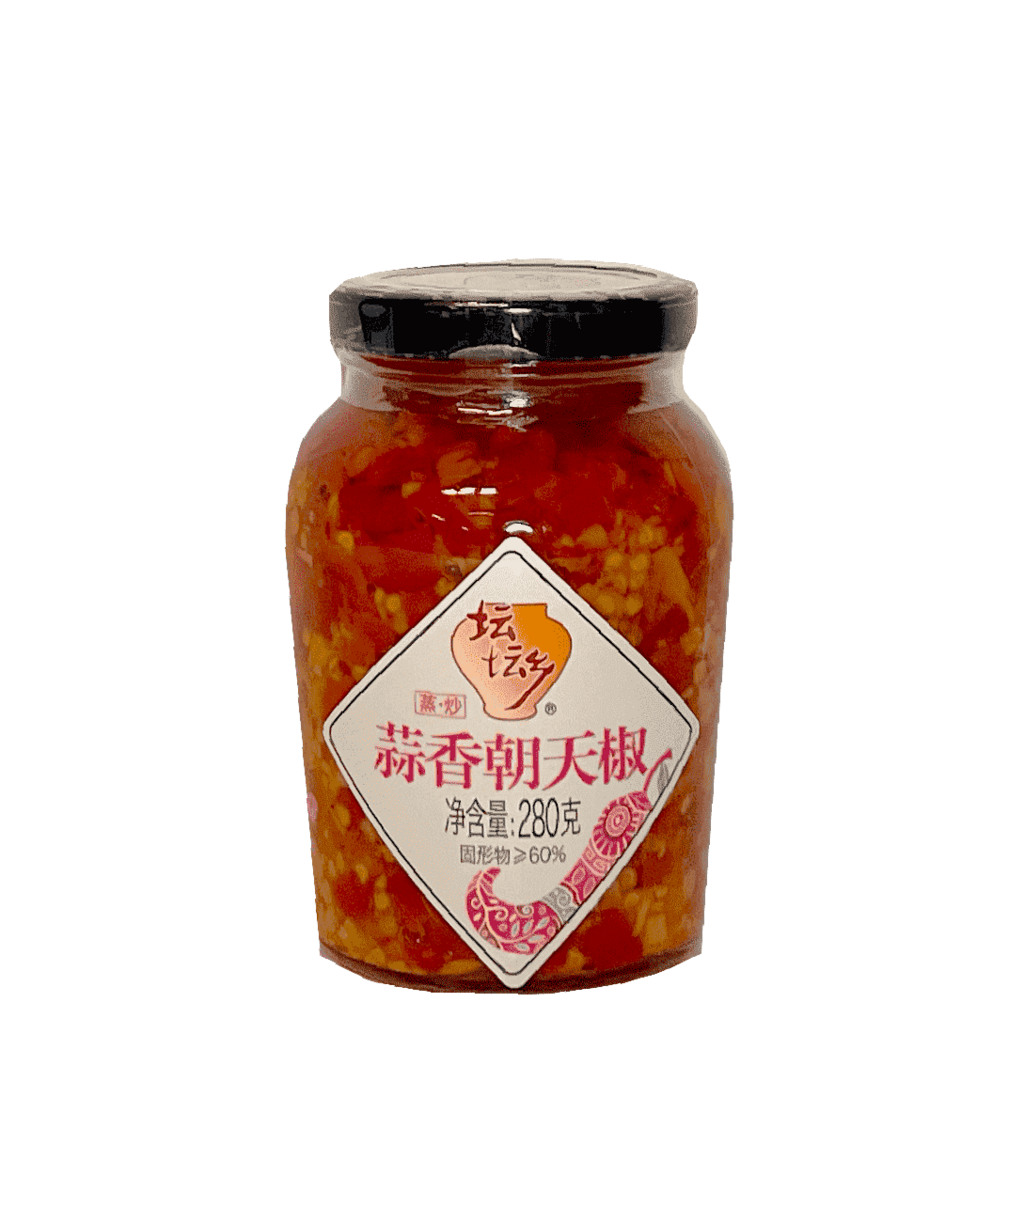 Chopped Chili (Duo Jiao) With Garlic 280g - Tantanxiang China